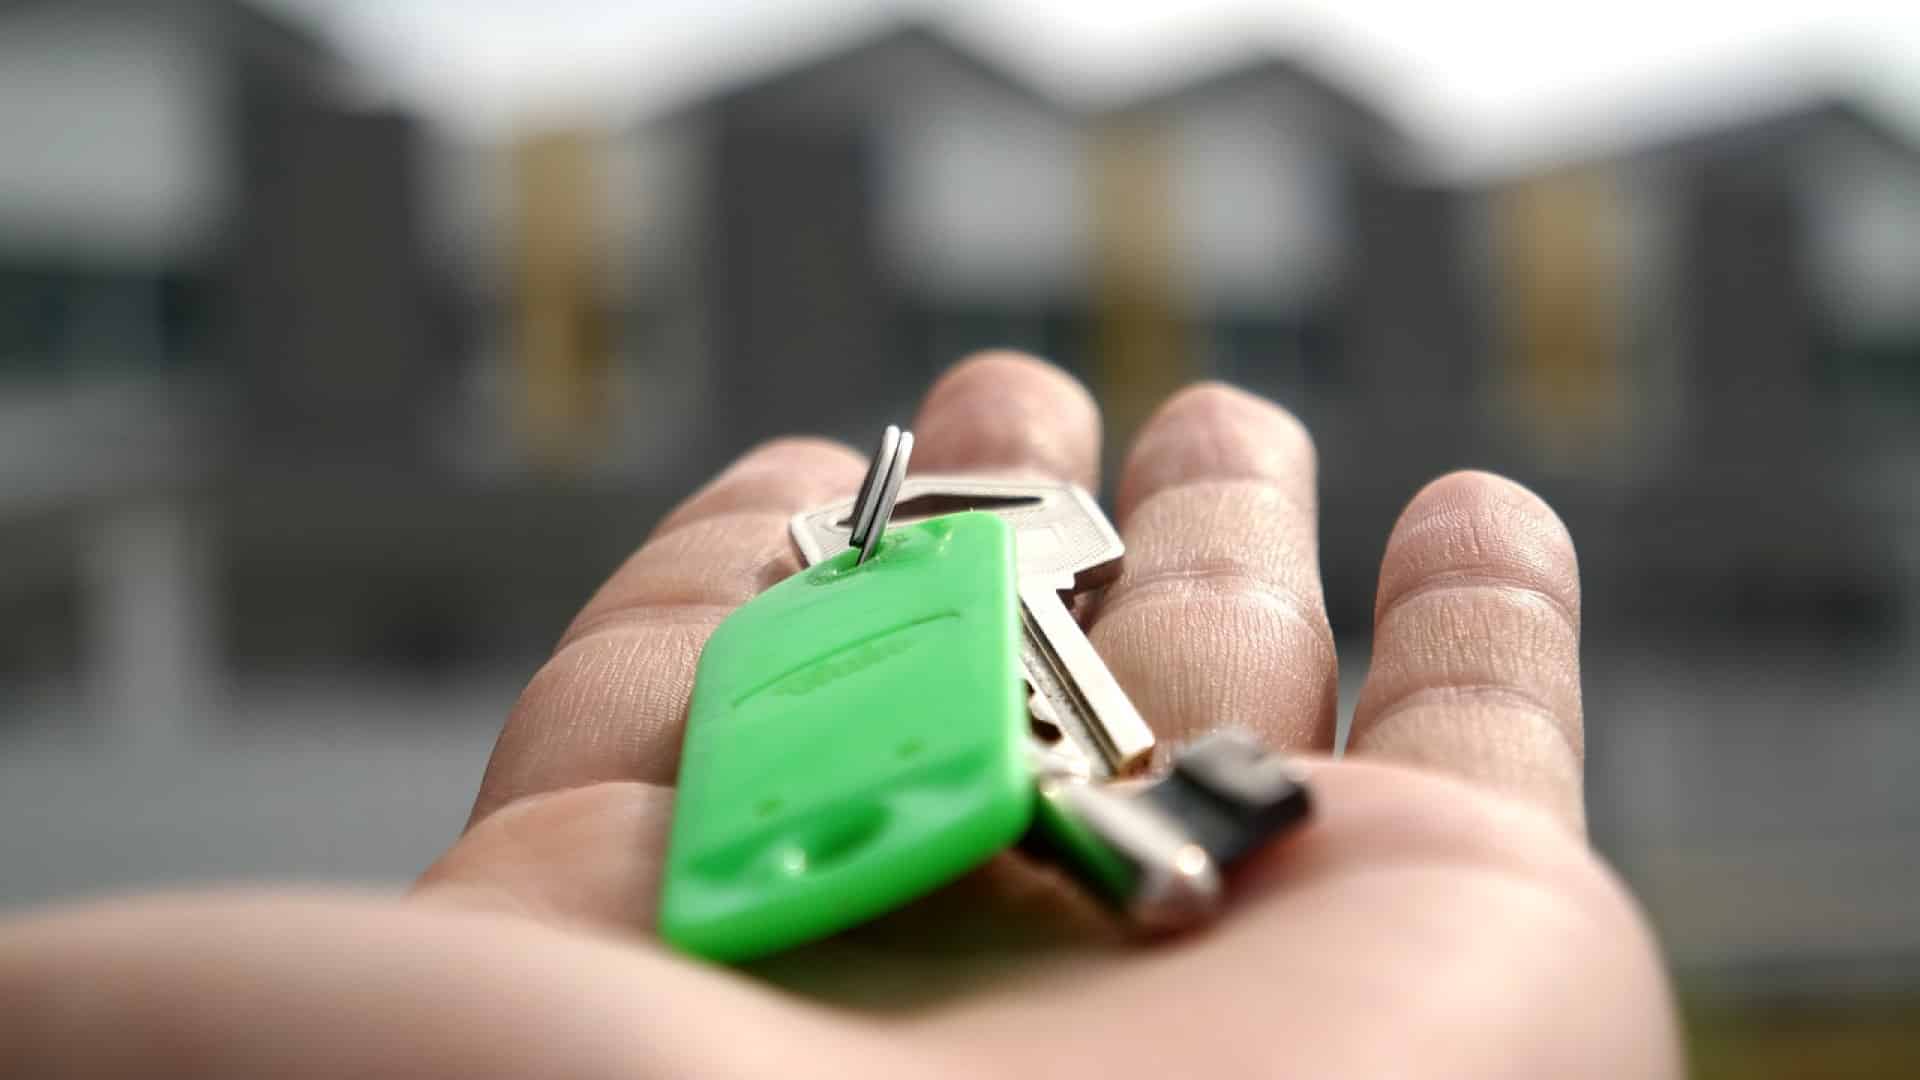 Comment trouver rapidement une maison à louer ?